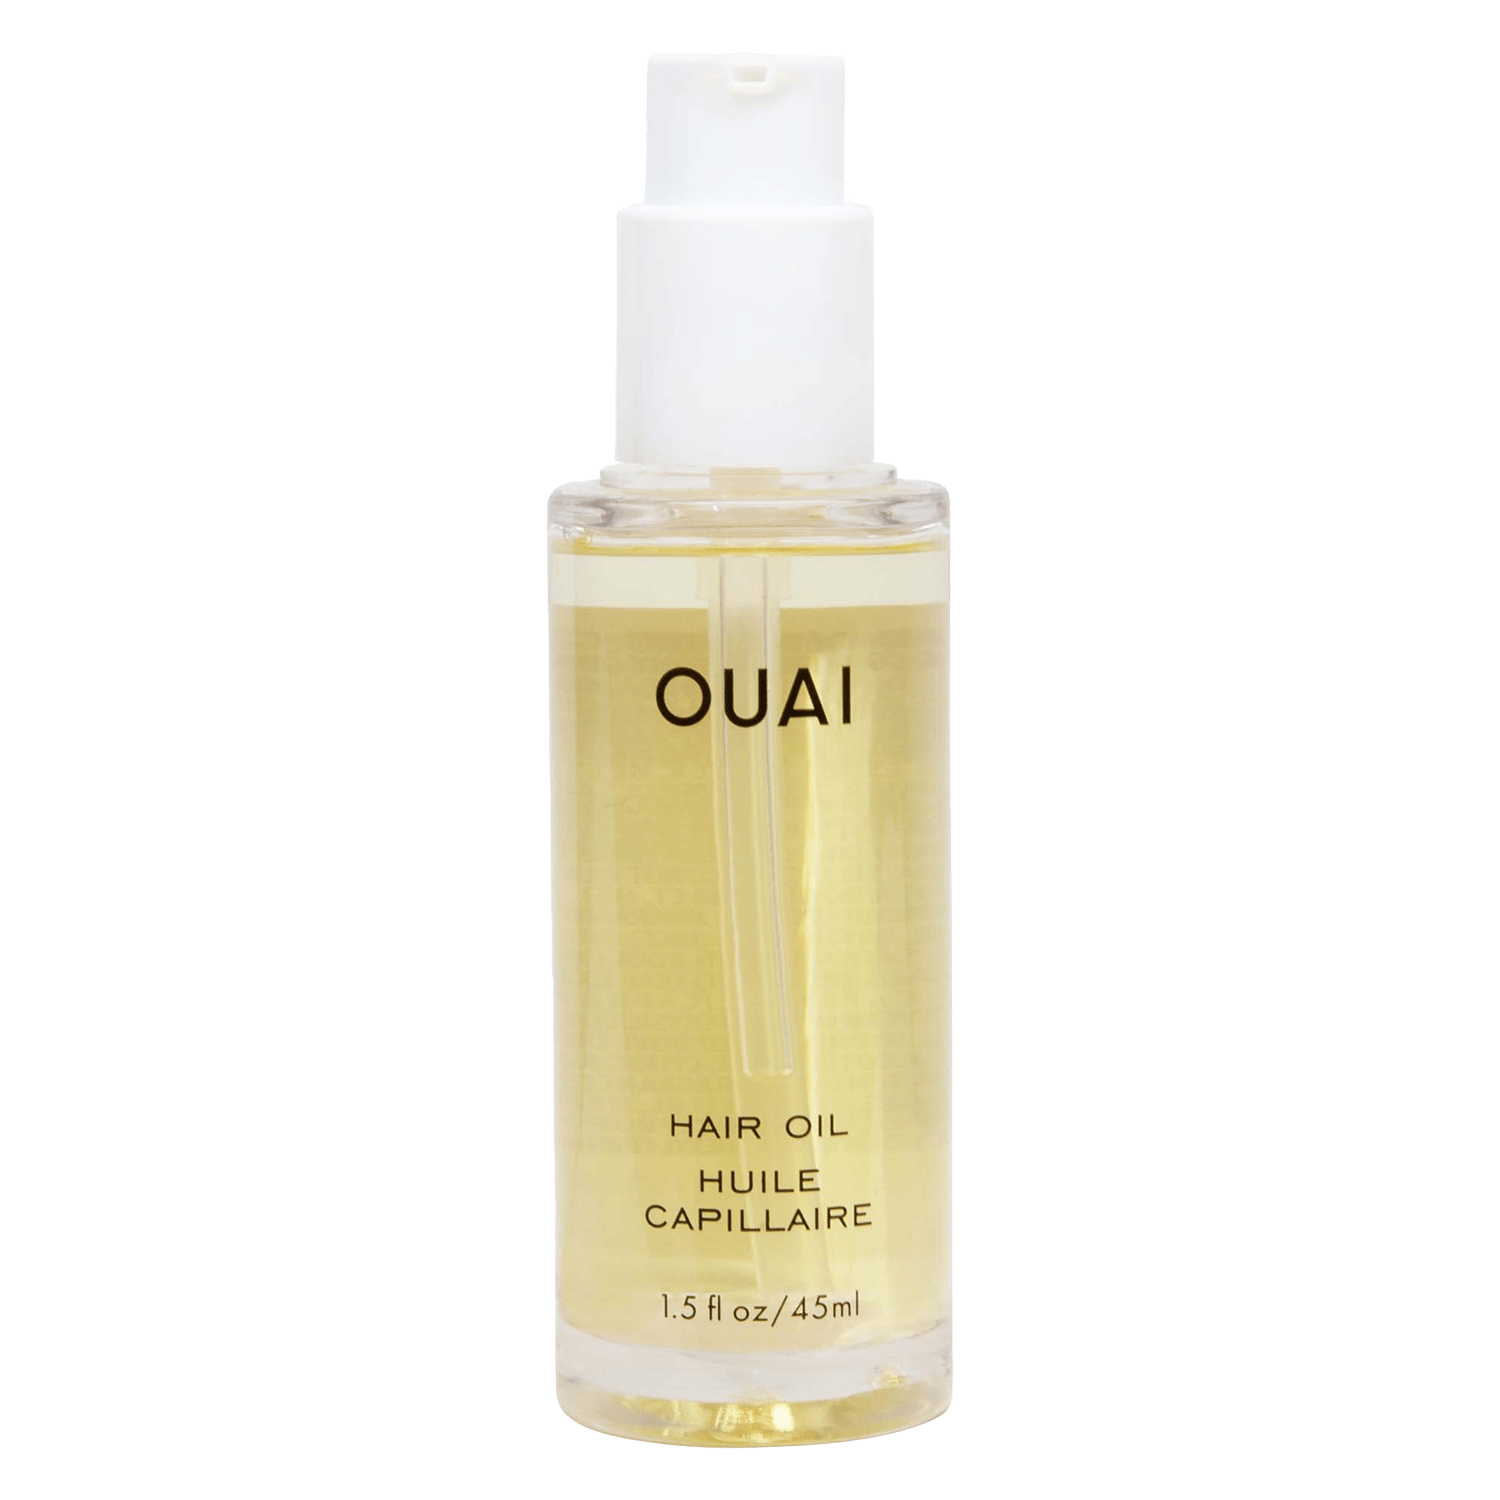 Produktbild von OUAI - Hair Oil